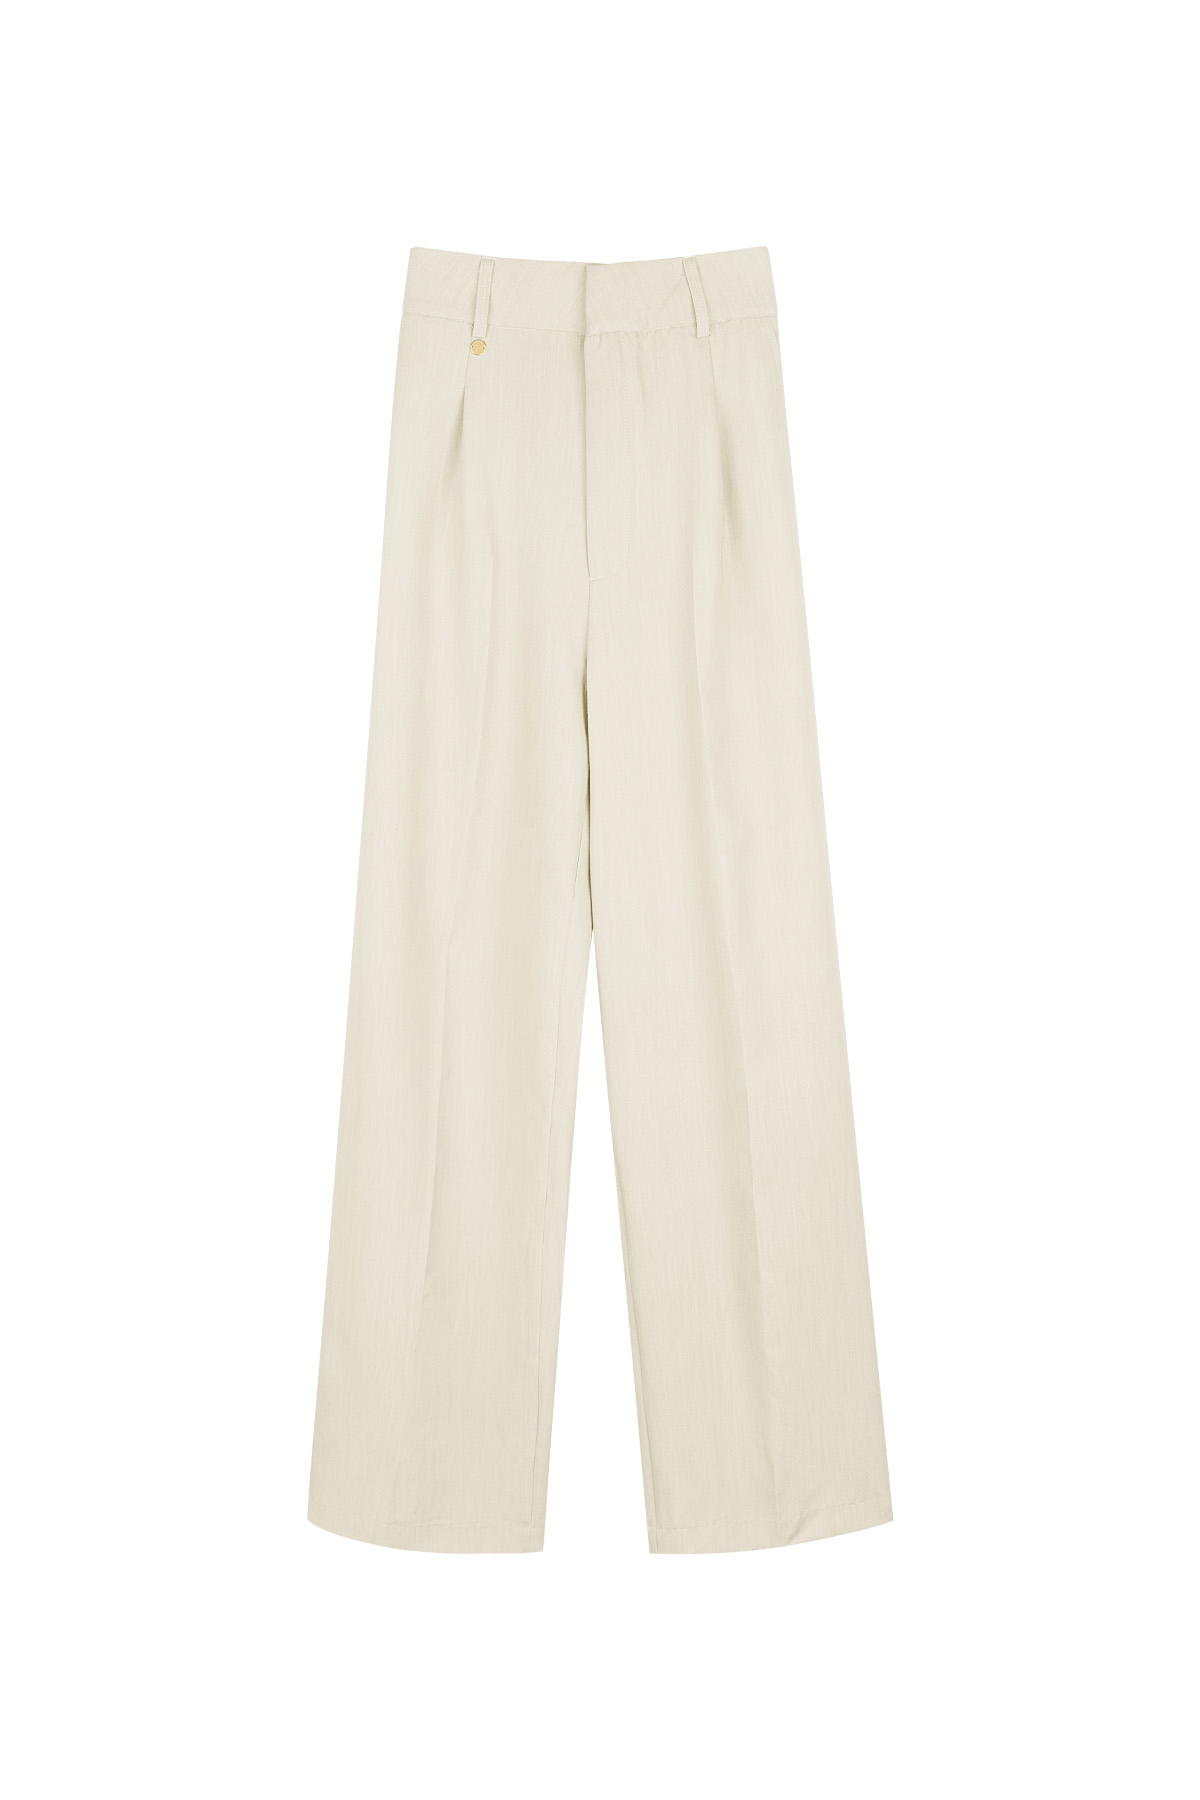 Pilili pantolon - kırık beyaz